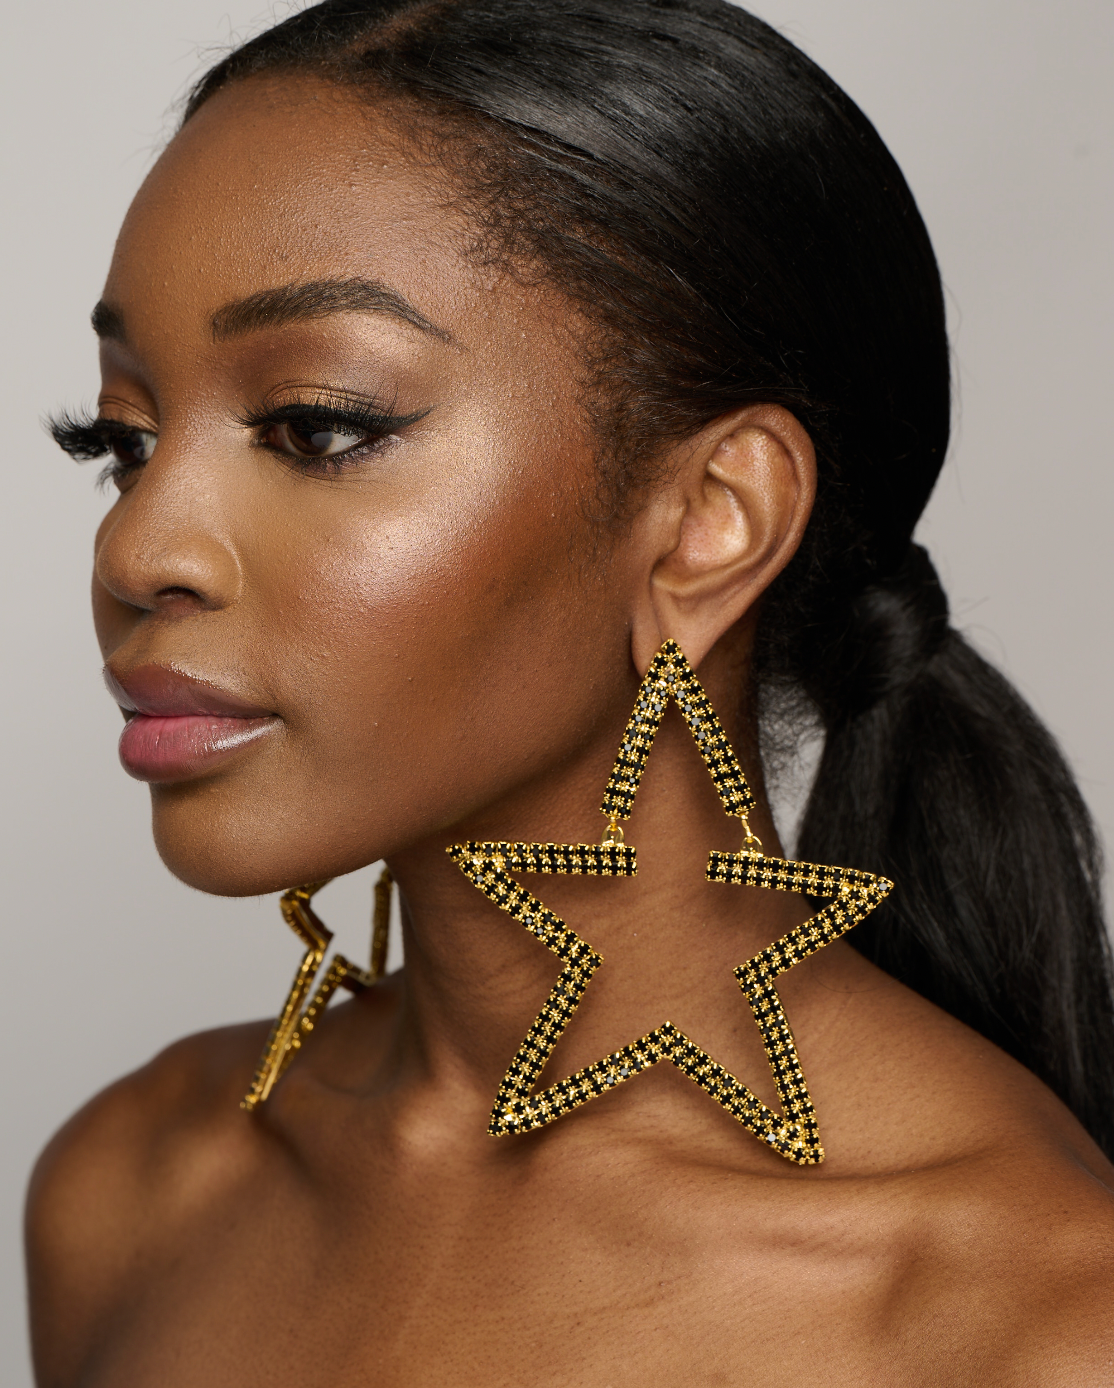 Large Luxury Glamorous Star Crystal Rhinestones Statement Stud Earrings